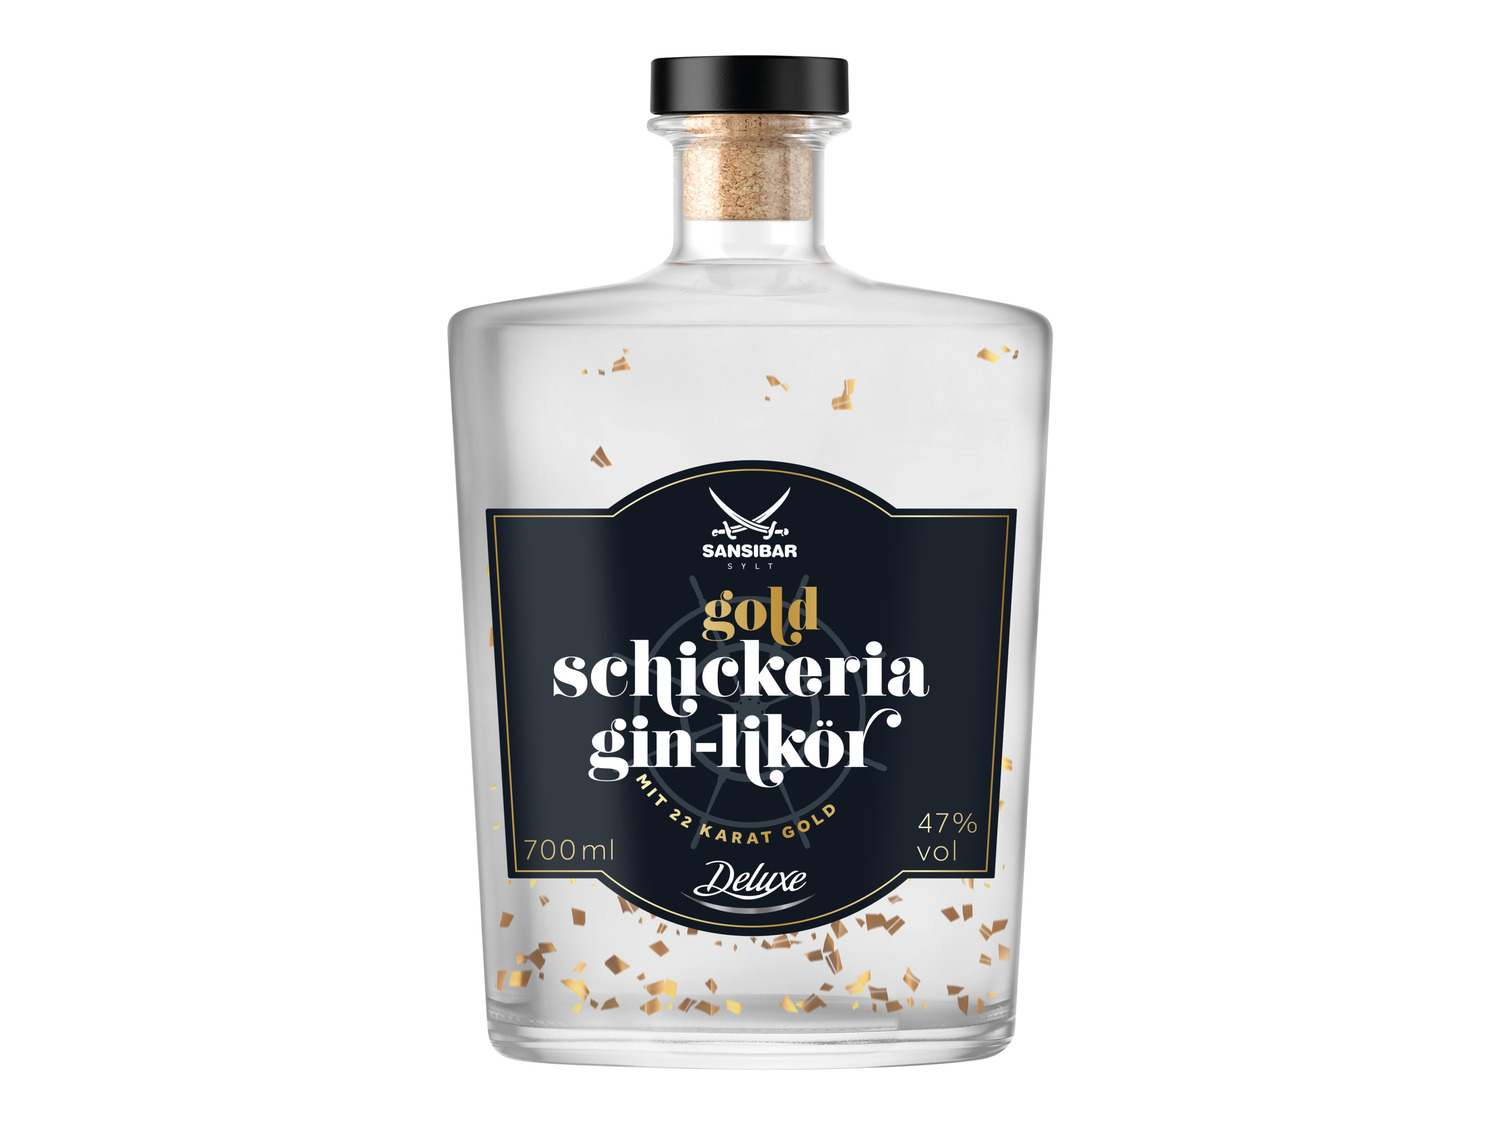 47% Gin-Likör SANSIBAR Gold mit Schickeria LIDL Vol |